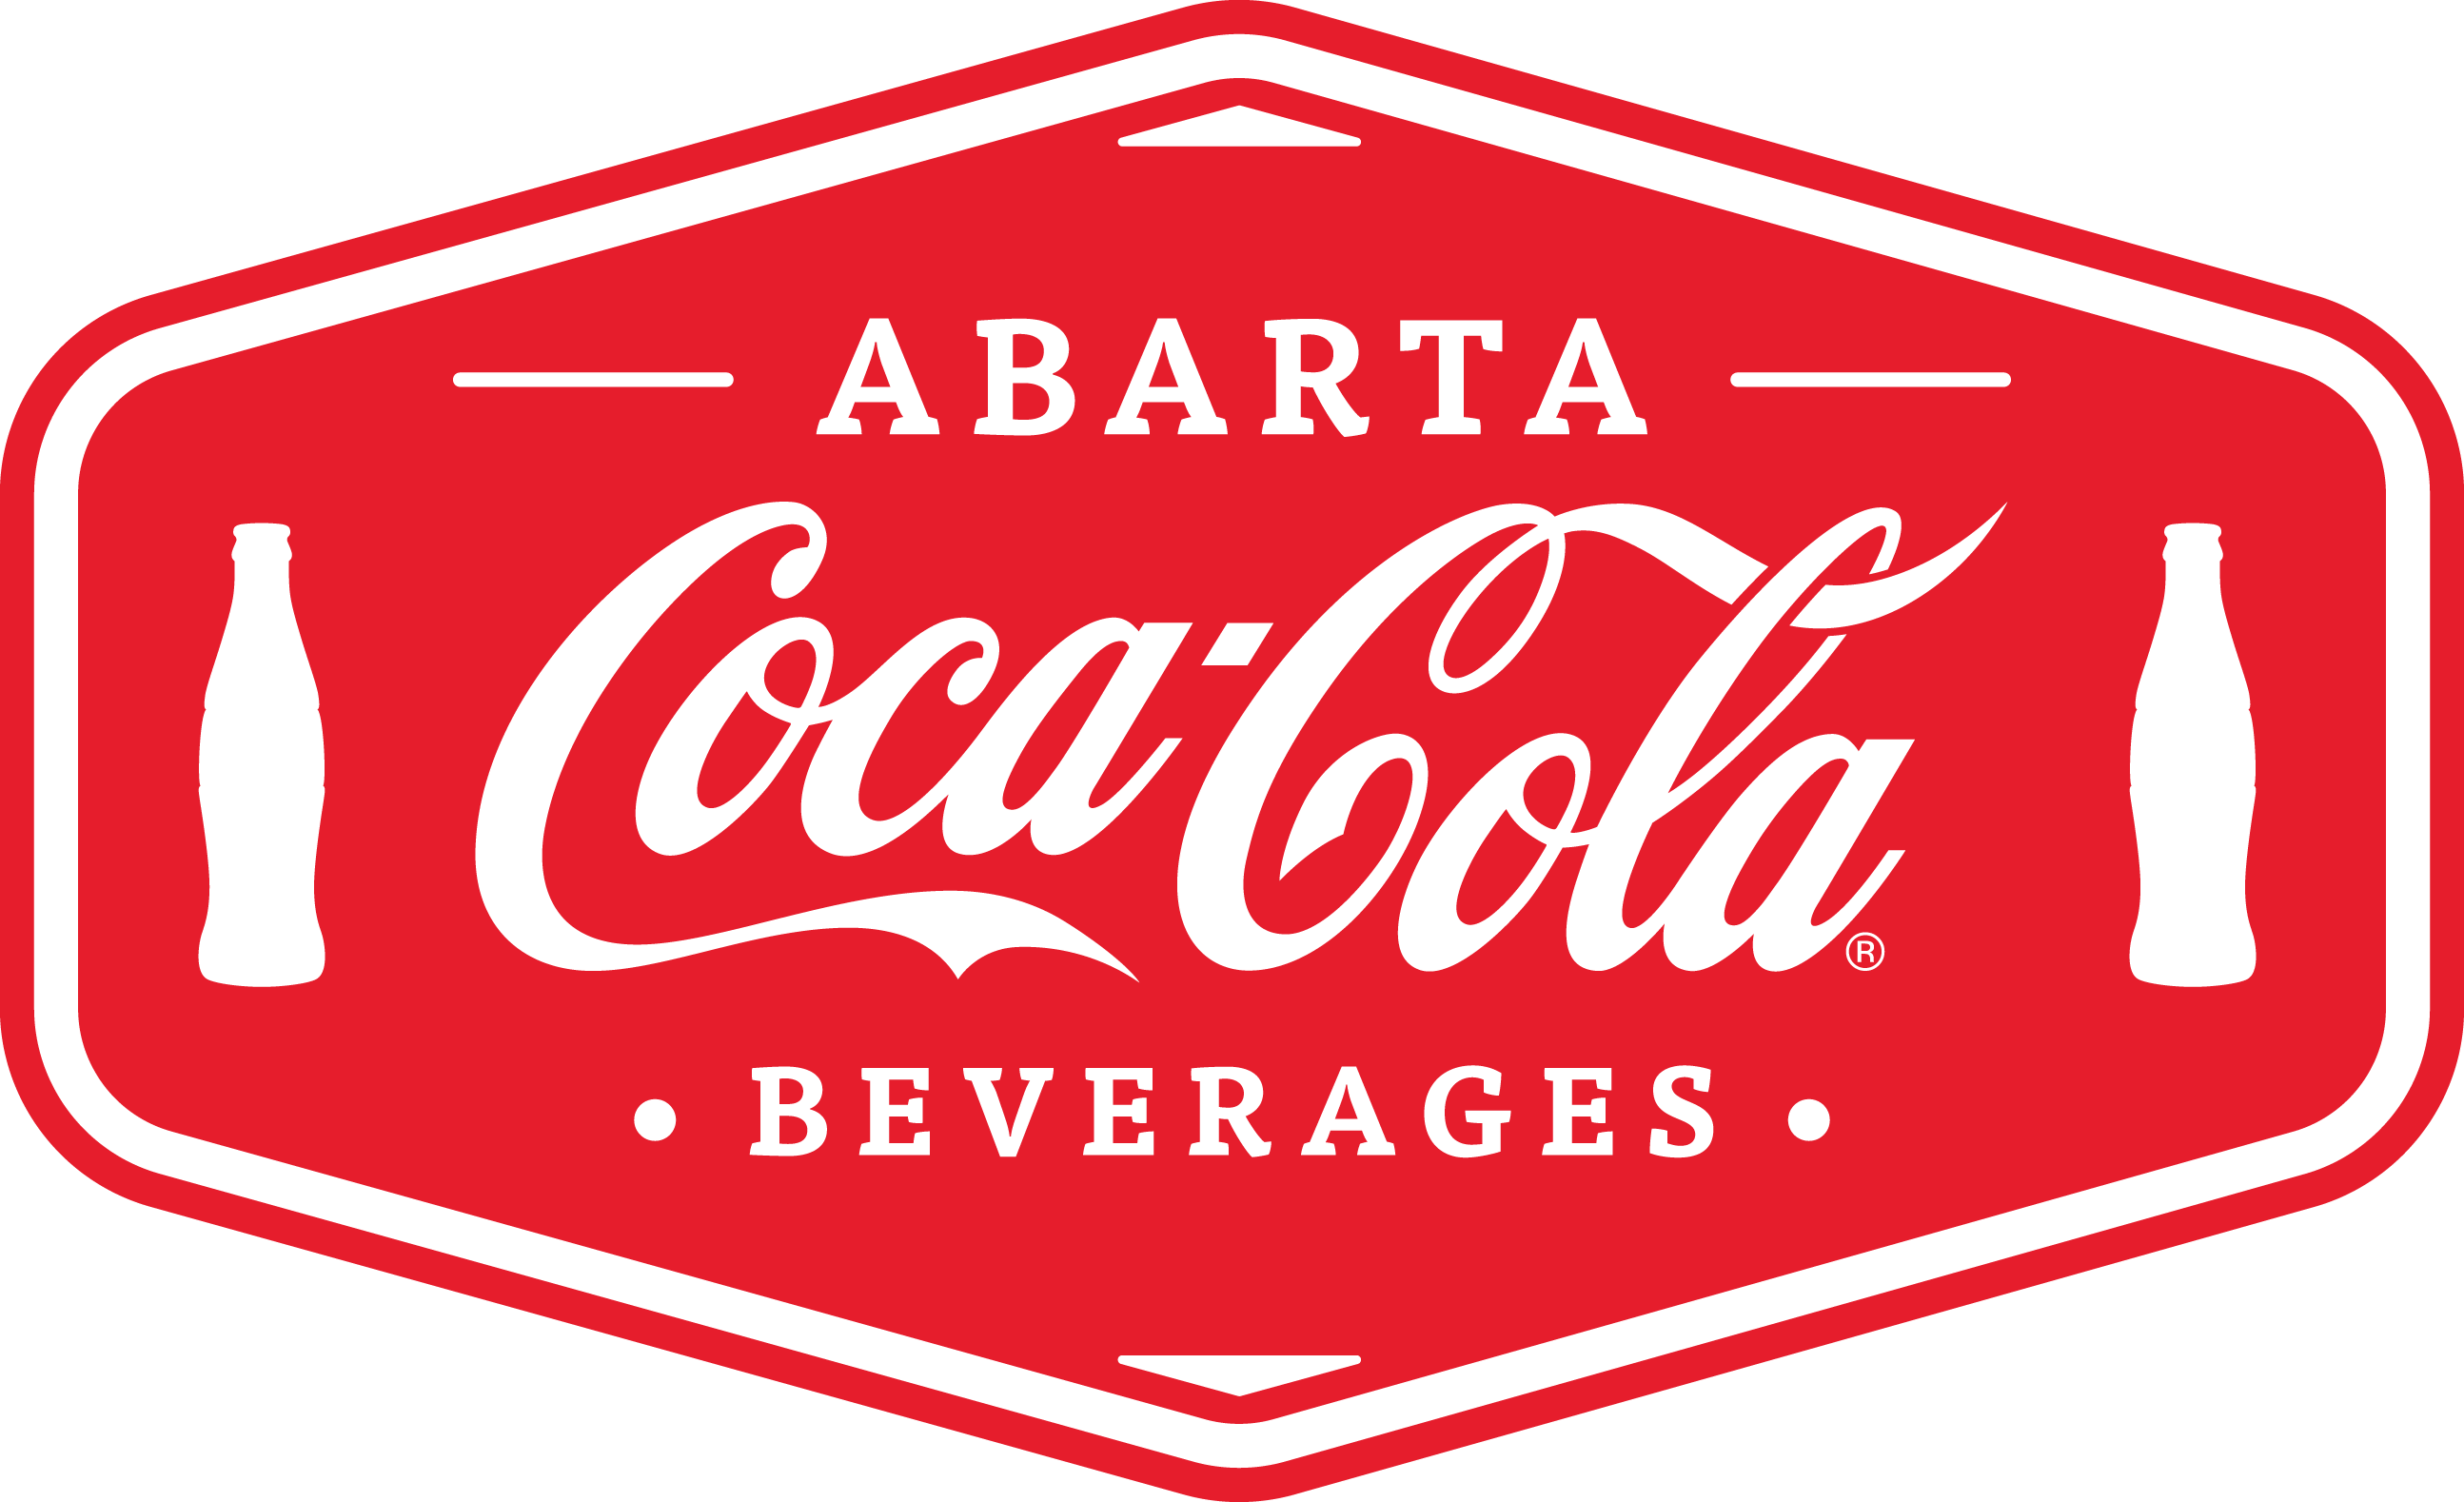 Abarta Coca Cola